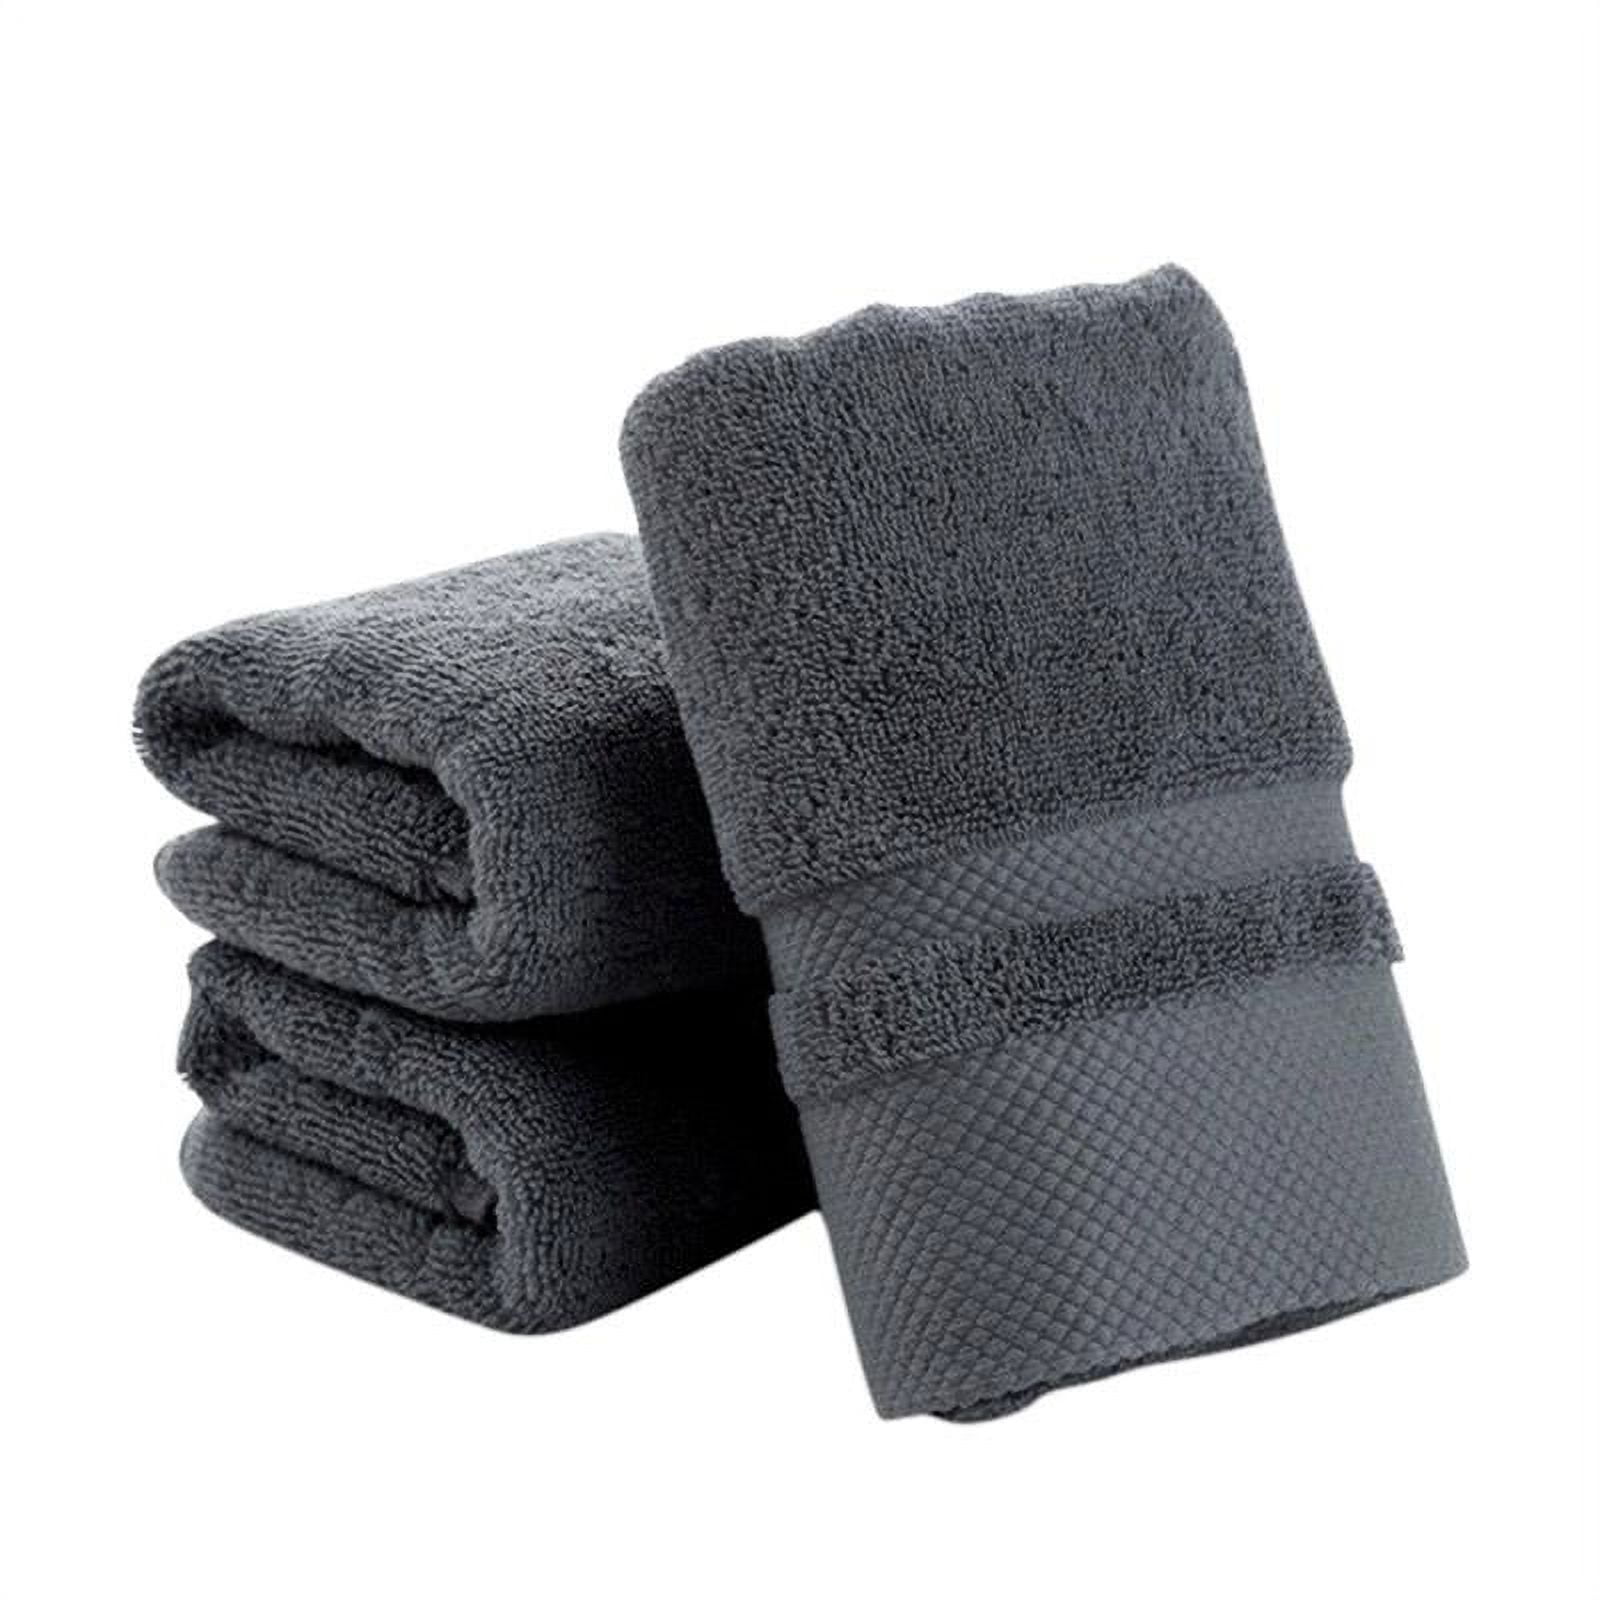 Towel Set for Bathroom 3 Pack Highly Absorbent Soft 